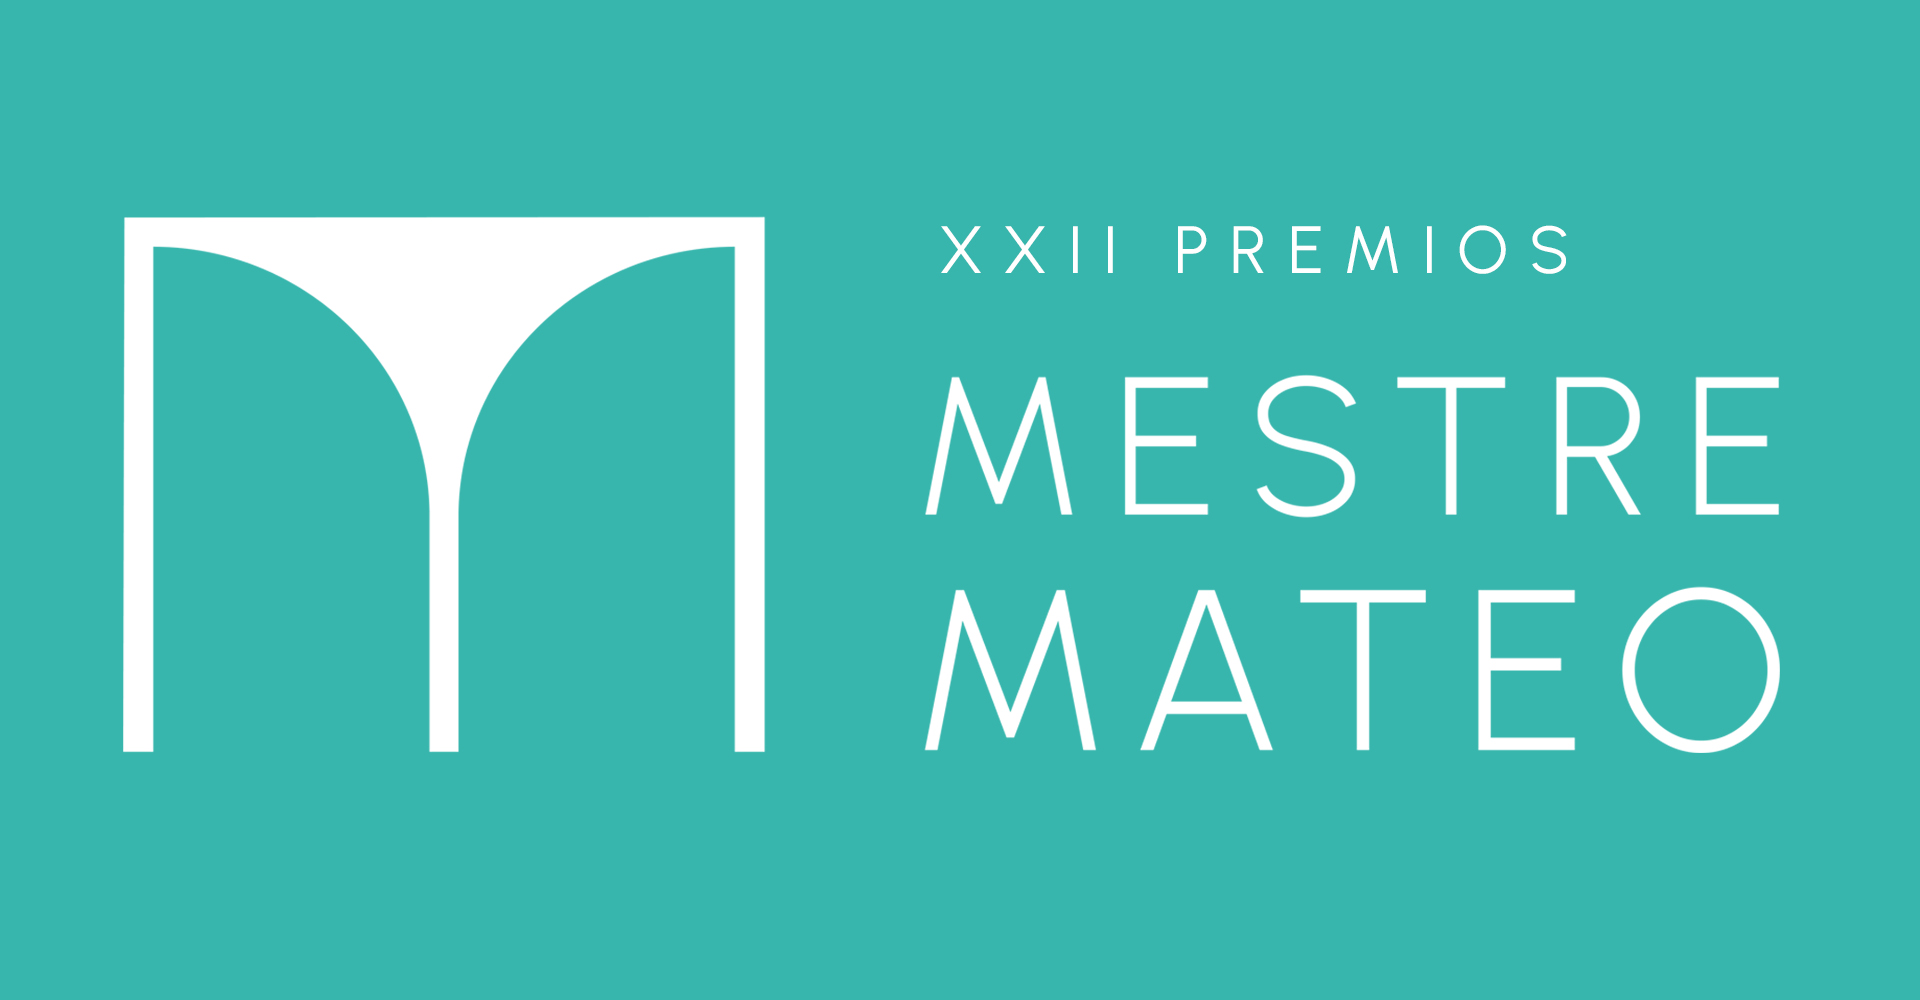 Aberto o prazo de inscrición para participar nos XXII Premios Mestre Mateo